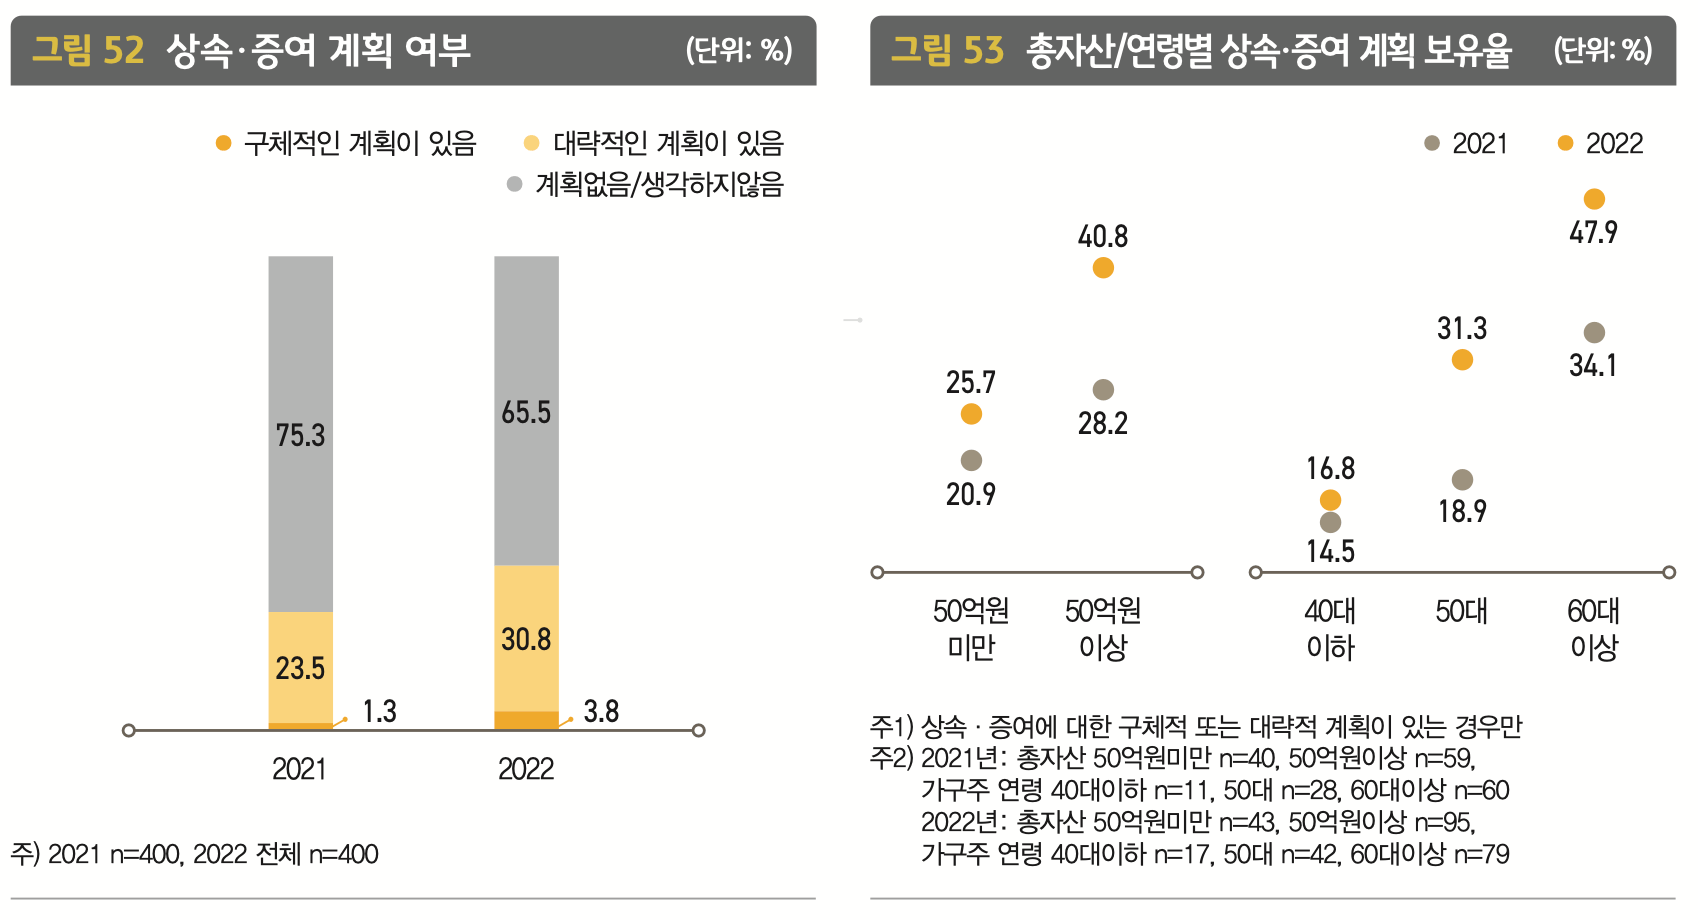 한국 부자들의 상속, 증여 계획 여부 및 보유율 그래프입니다.